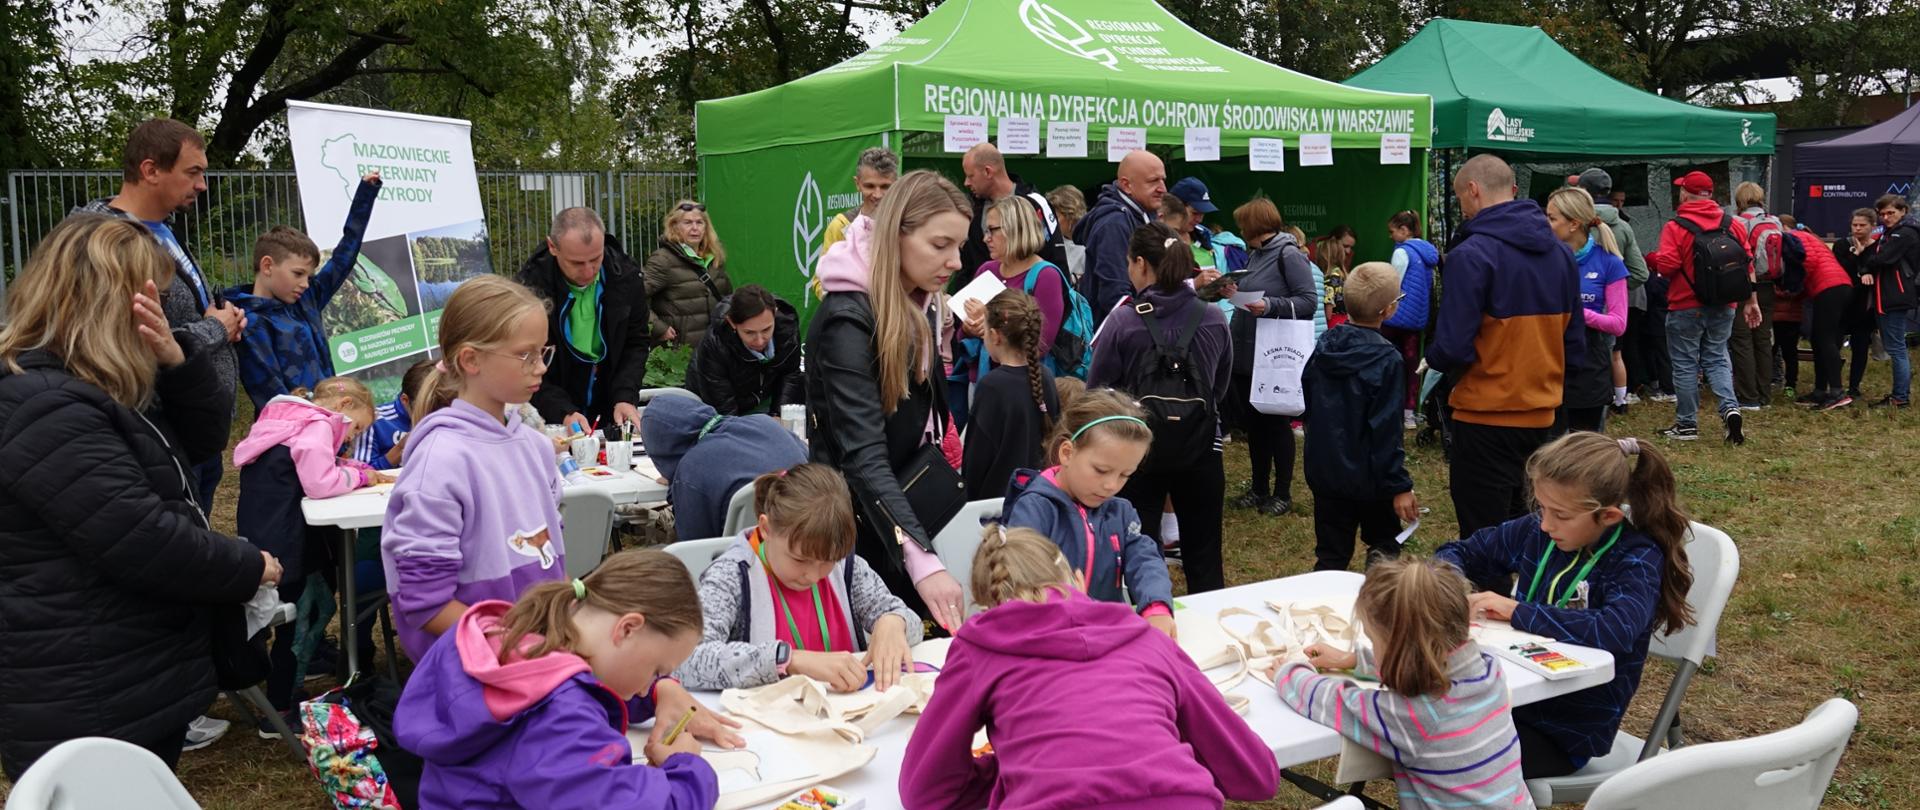 Festyn - na pierwszym planie dzieci przy stolikach wykonują prace plastyczne, w tle namiot i uczestnicy konkursów